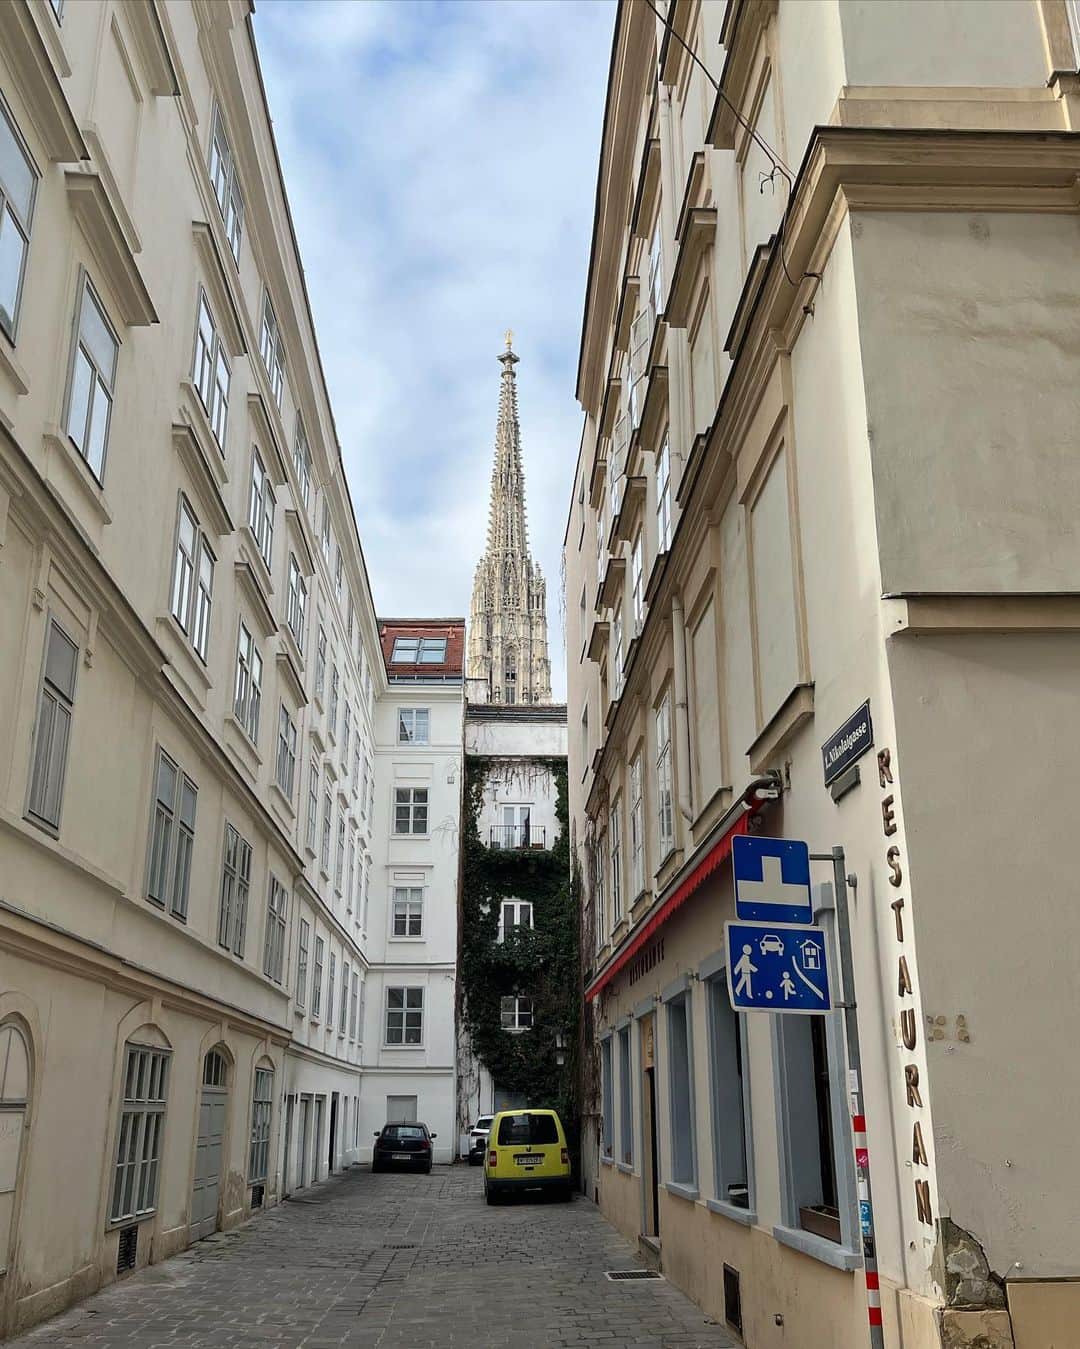 鰻和弘のインスタグラム：「【ドイツチェコオーストリア1人旅21】  ウィーン。歩いてる時に見えたシュテファン寺院。こういうの昔も撮ったなぁと思っているとやっぱり。パリのエッフェル塔。投稿してた。このアングルが好きなんやと思う。穏やかな旅の終盤。  #もう帰る時間迫ってる #濃い2日半 #トイレしたくなる #腹痛い #トイレしてからタクシーで空港へ行こう #トイレどこや？ #駅に行って見つける #ホッとする #トイレの大に入ろうとした瞬間 #誰かに後ろから襟元つかまれる #引っ張り上げられる勢い #びっくりする #振り返るとウィーンのおばちゃん #ドアの貼り紙指でコンコン #忘れてた #有料や #50セント支払う #一瞬めちゃくちゃ焦った #ボコられると思った #ドキドキしすぎて腹痛いの治った #ドアから出ると腕を組みパイプ椅子に座ったおばちゃんがこちらを見ている #怖すぎた」